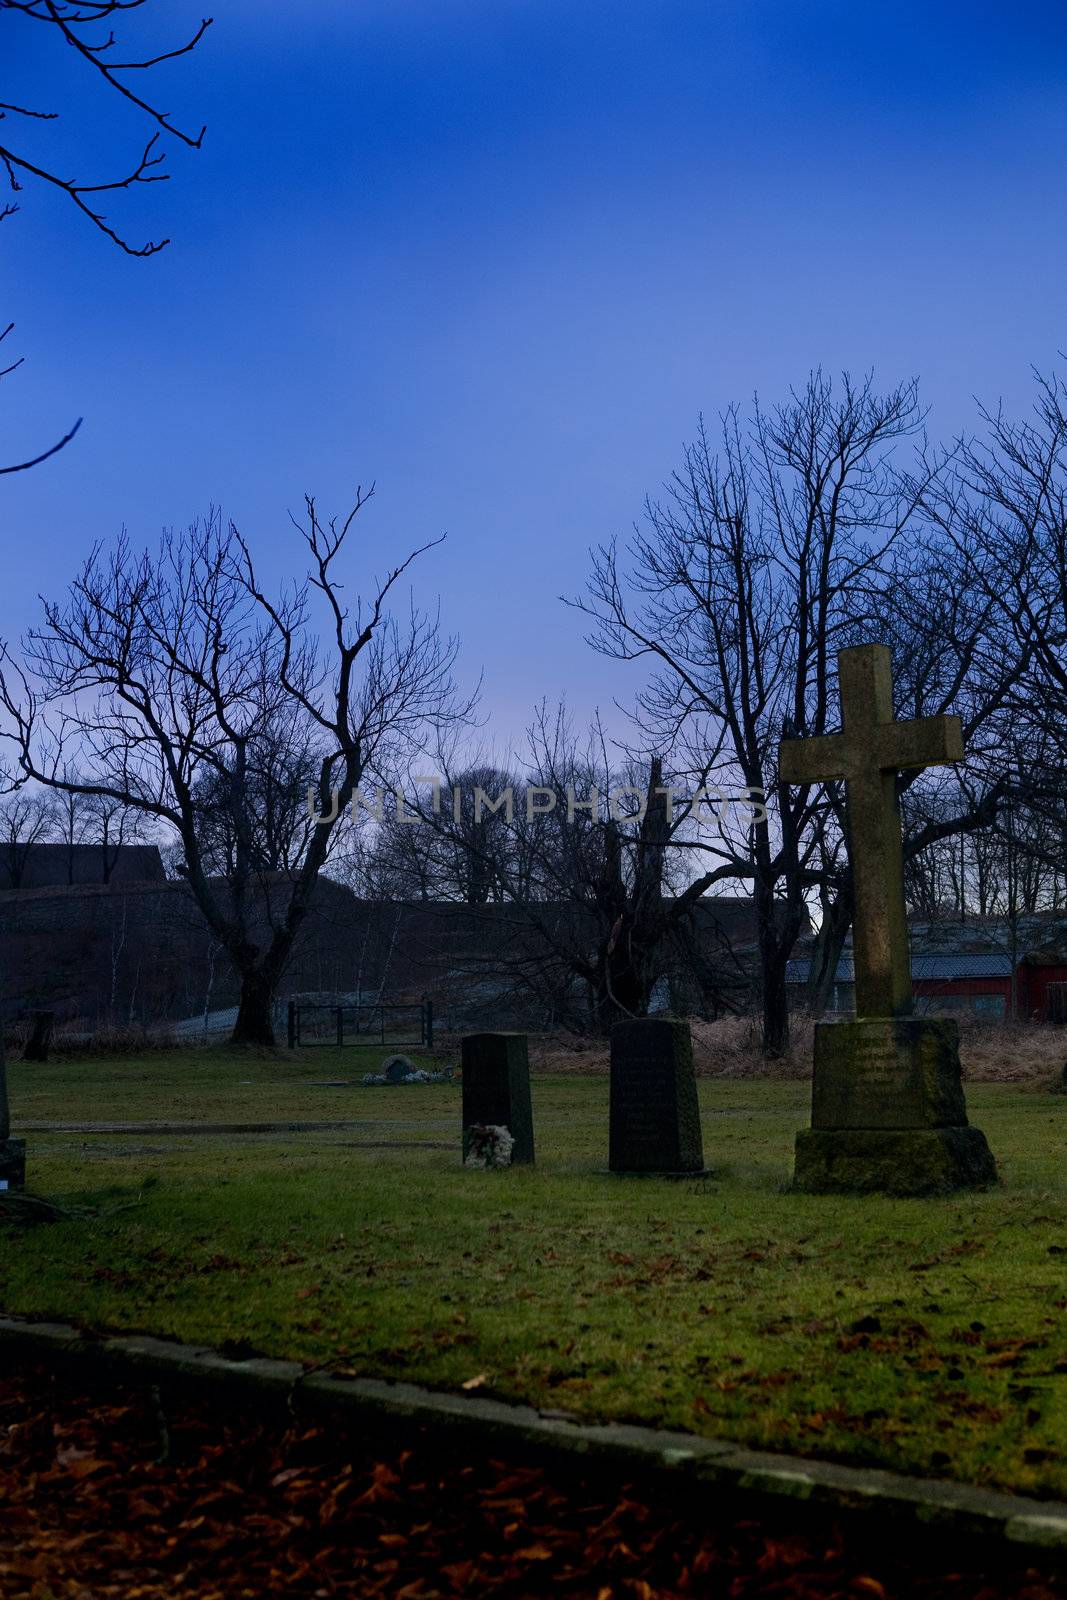 A spooky graveyard with a deep blue sky